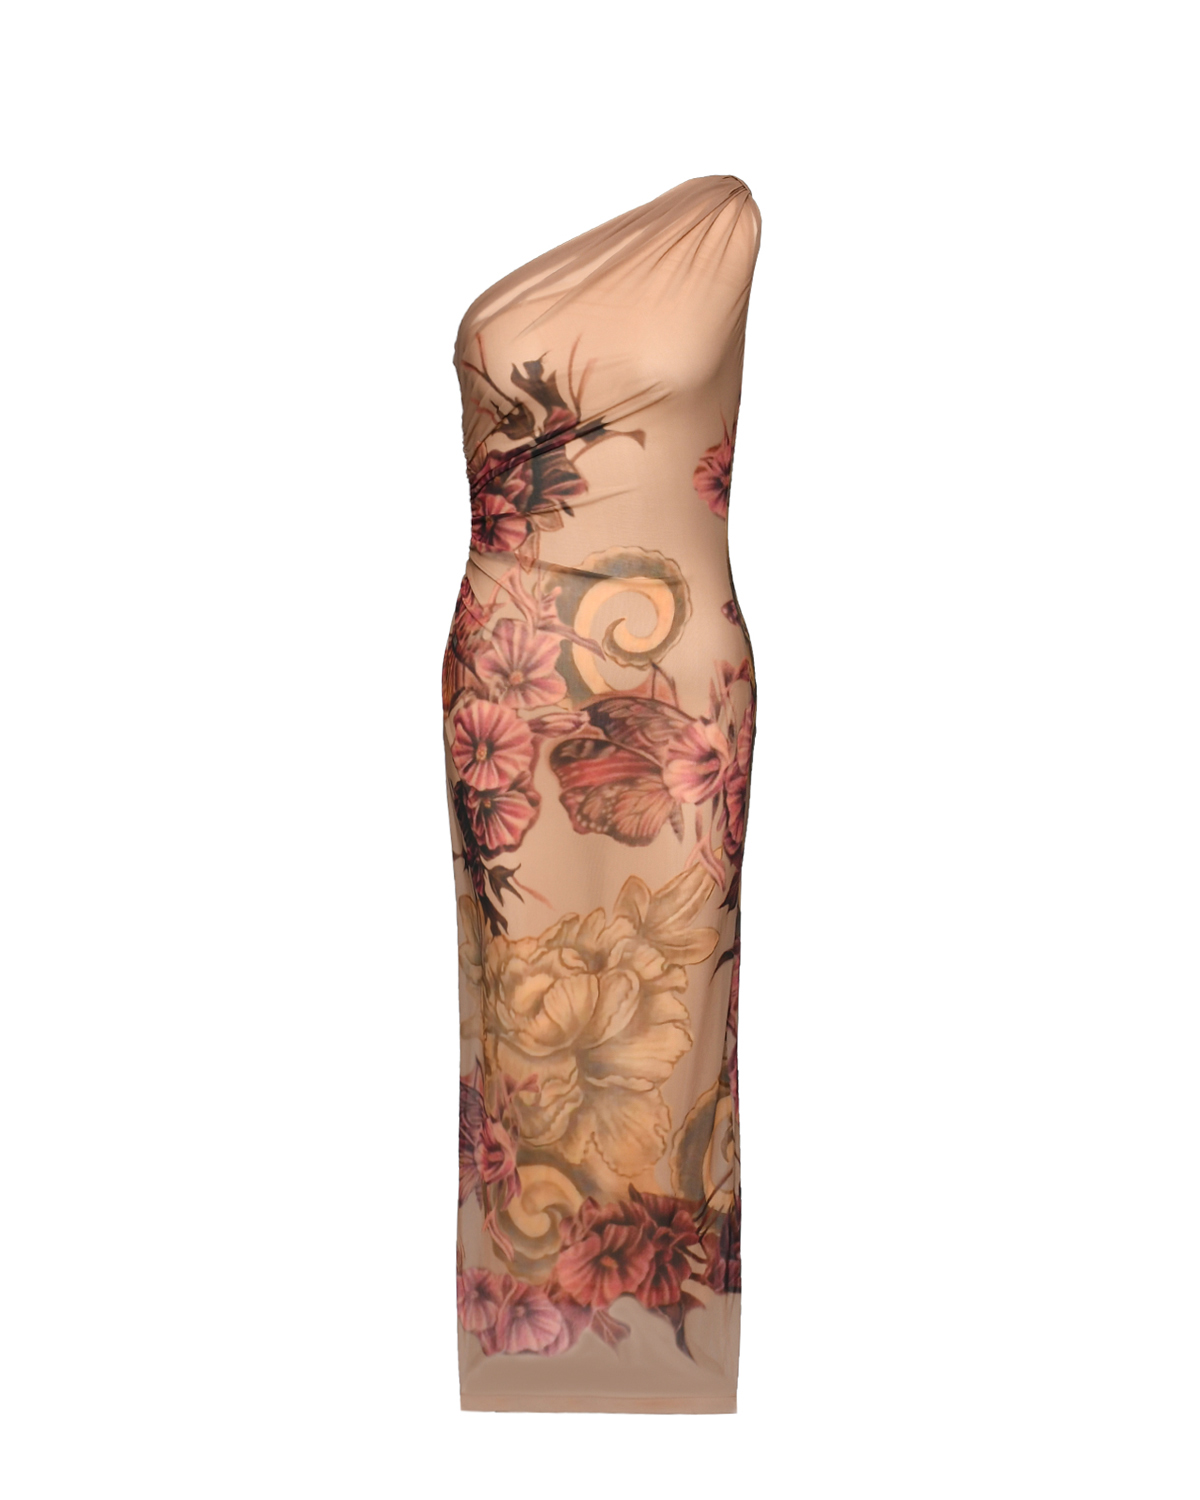 Платье на одно плечо, цветы в азиатском стиле Alberta Ferretti, размер 40